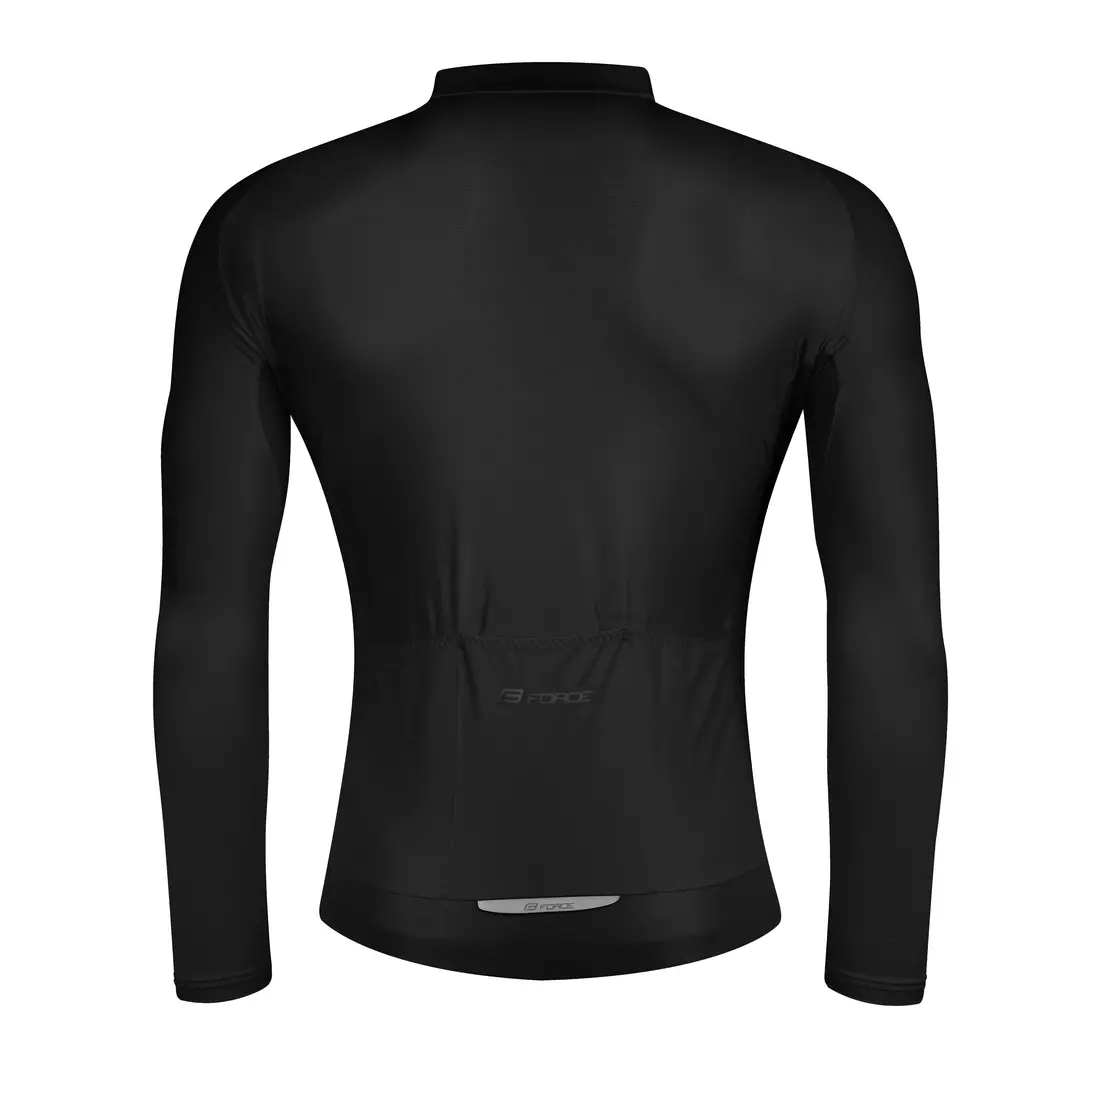 FORCE PURE Cyklistická košile s dlouhým rukávem, černá